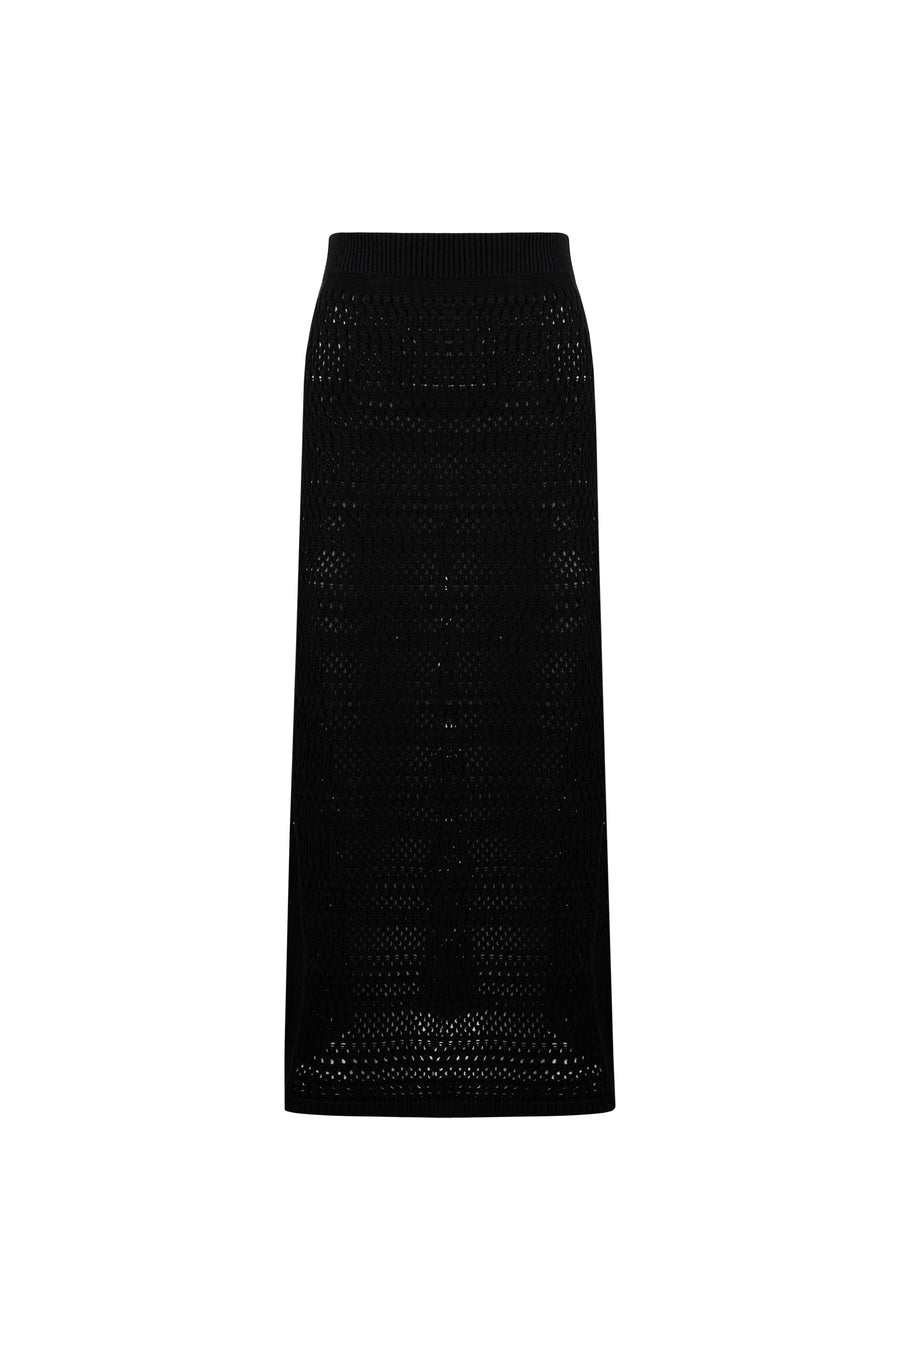 A-line Black Long Skirt